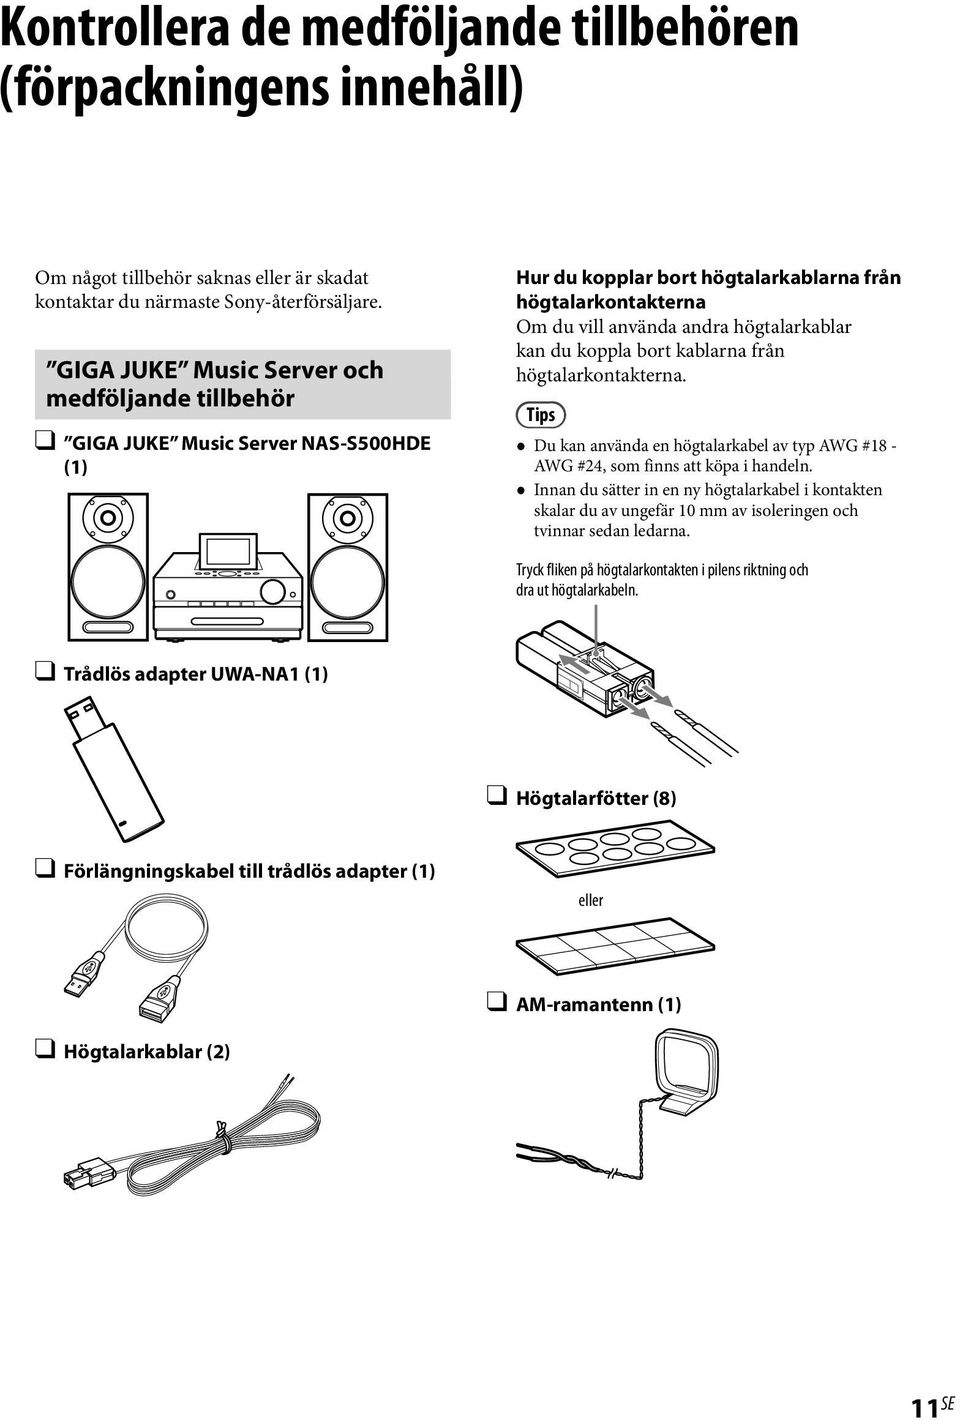 koppla bort kablarna från högtalarkontakterna. Tips Du kan använda en högtalarkabel av typ AWG #18 - AWG #24, som finns att köpa i handeln.